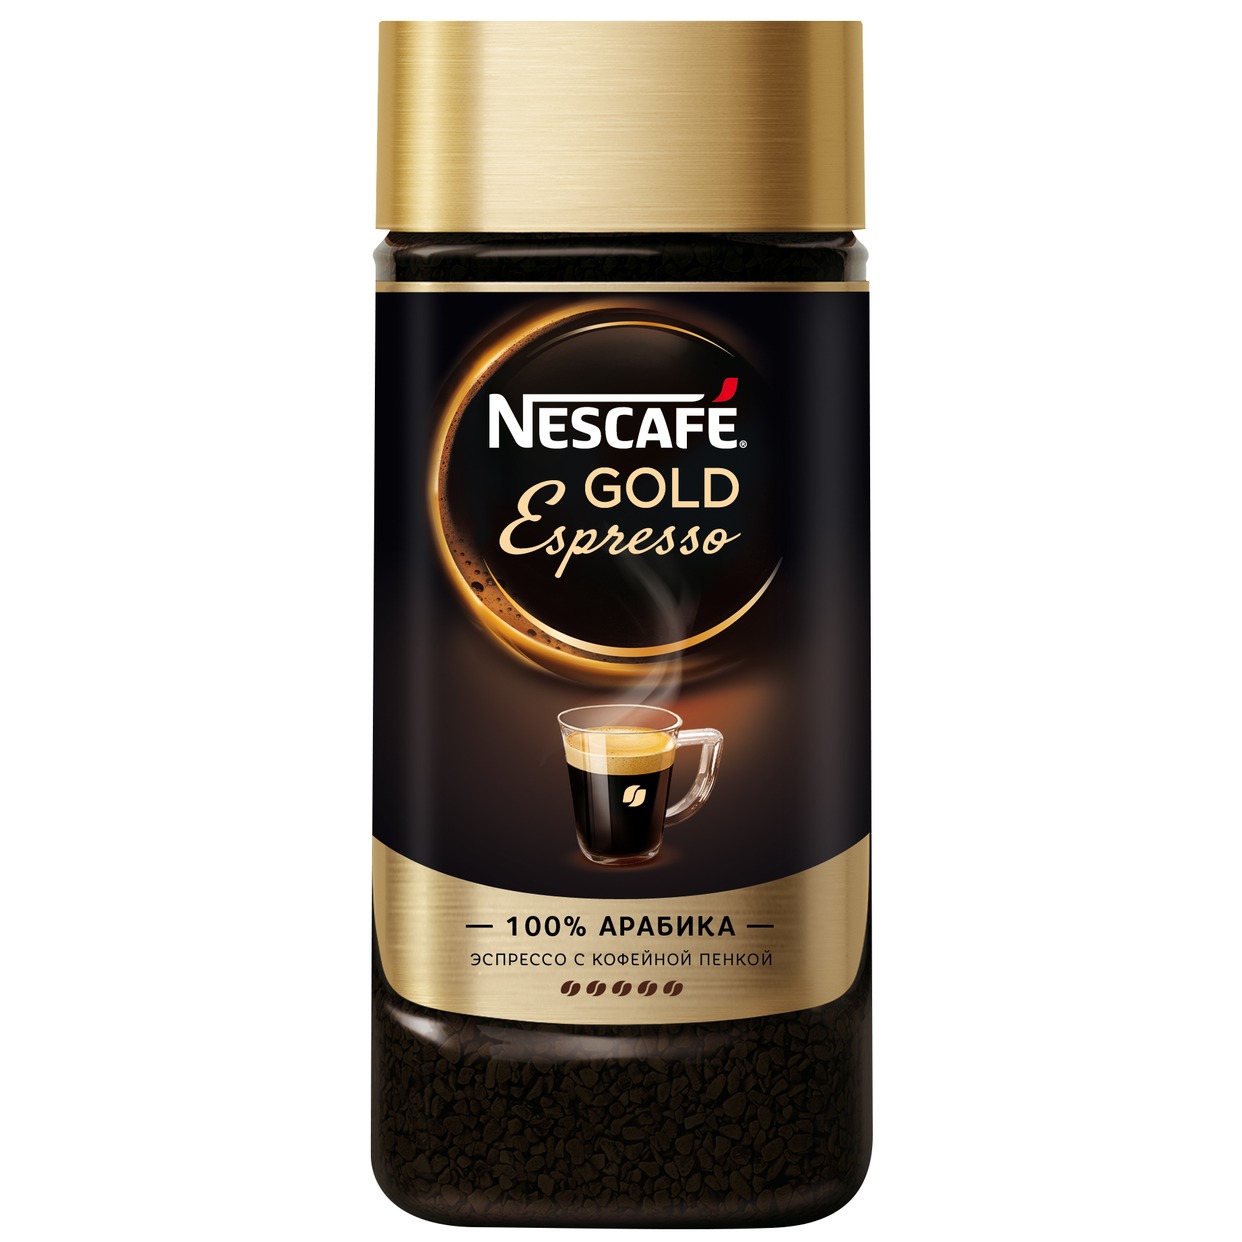 NESCAFE® Gold Espresso НАТУРАЛЬНЫЙ РАСТВОРИМЫЙ ПОРОШКОВООБРАЗНЫЙ КОФЕ 85 г по акции в Пятерочке